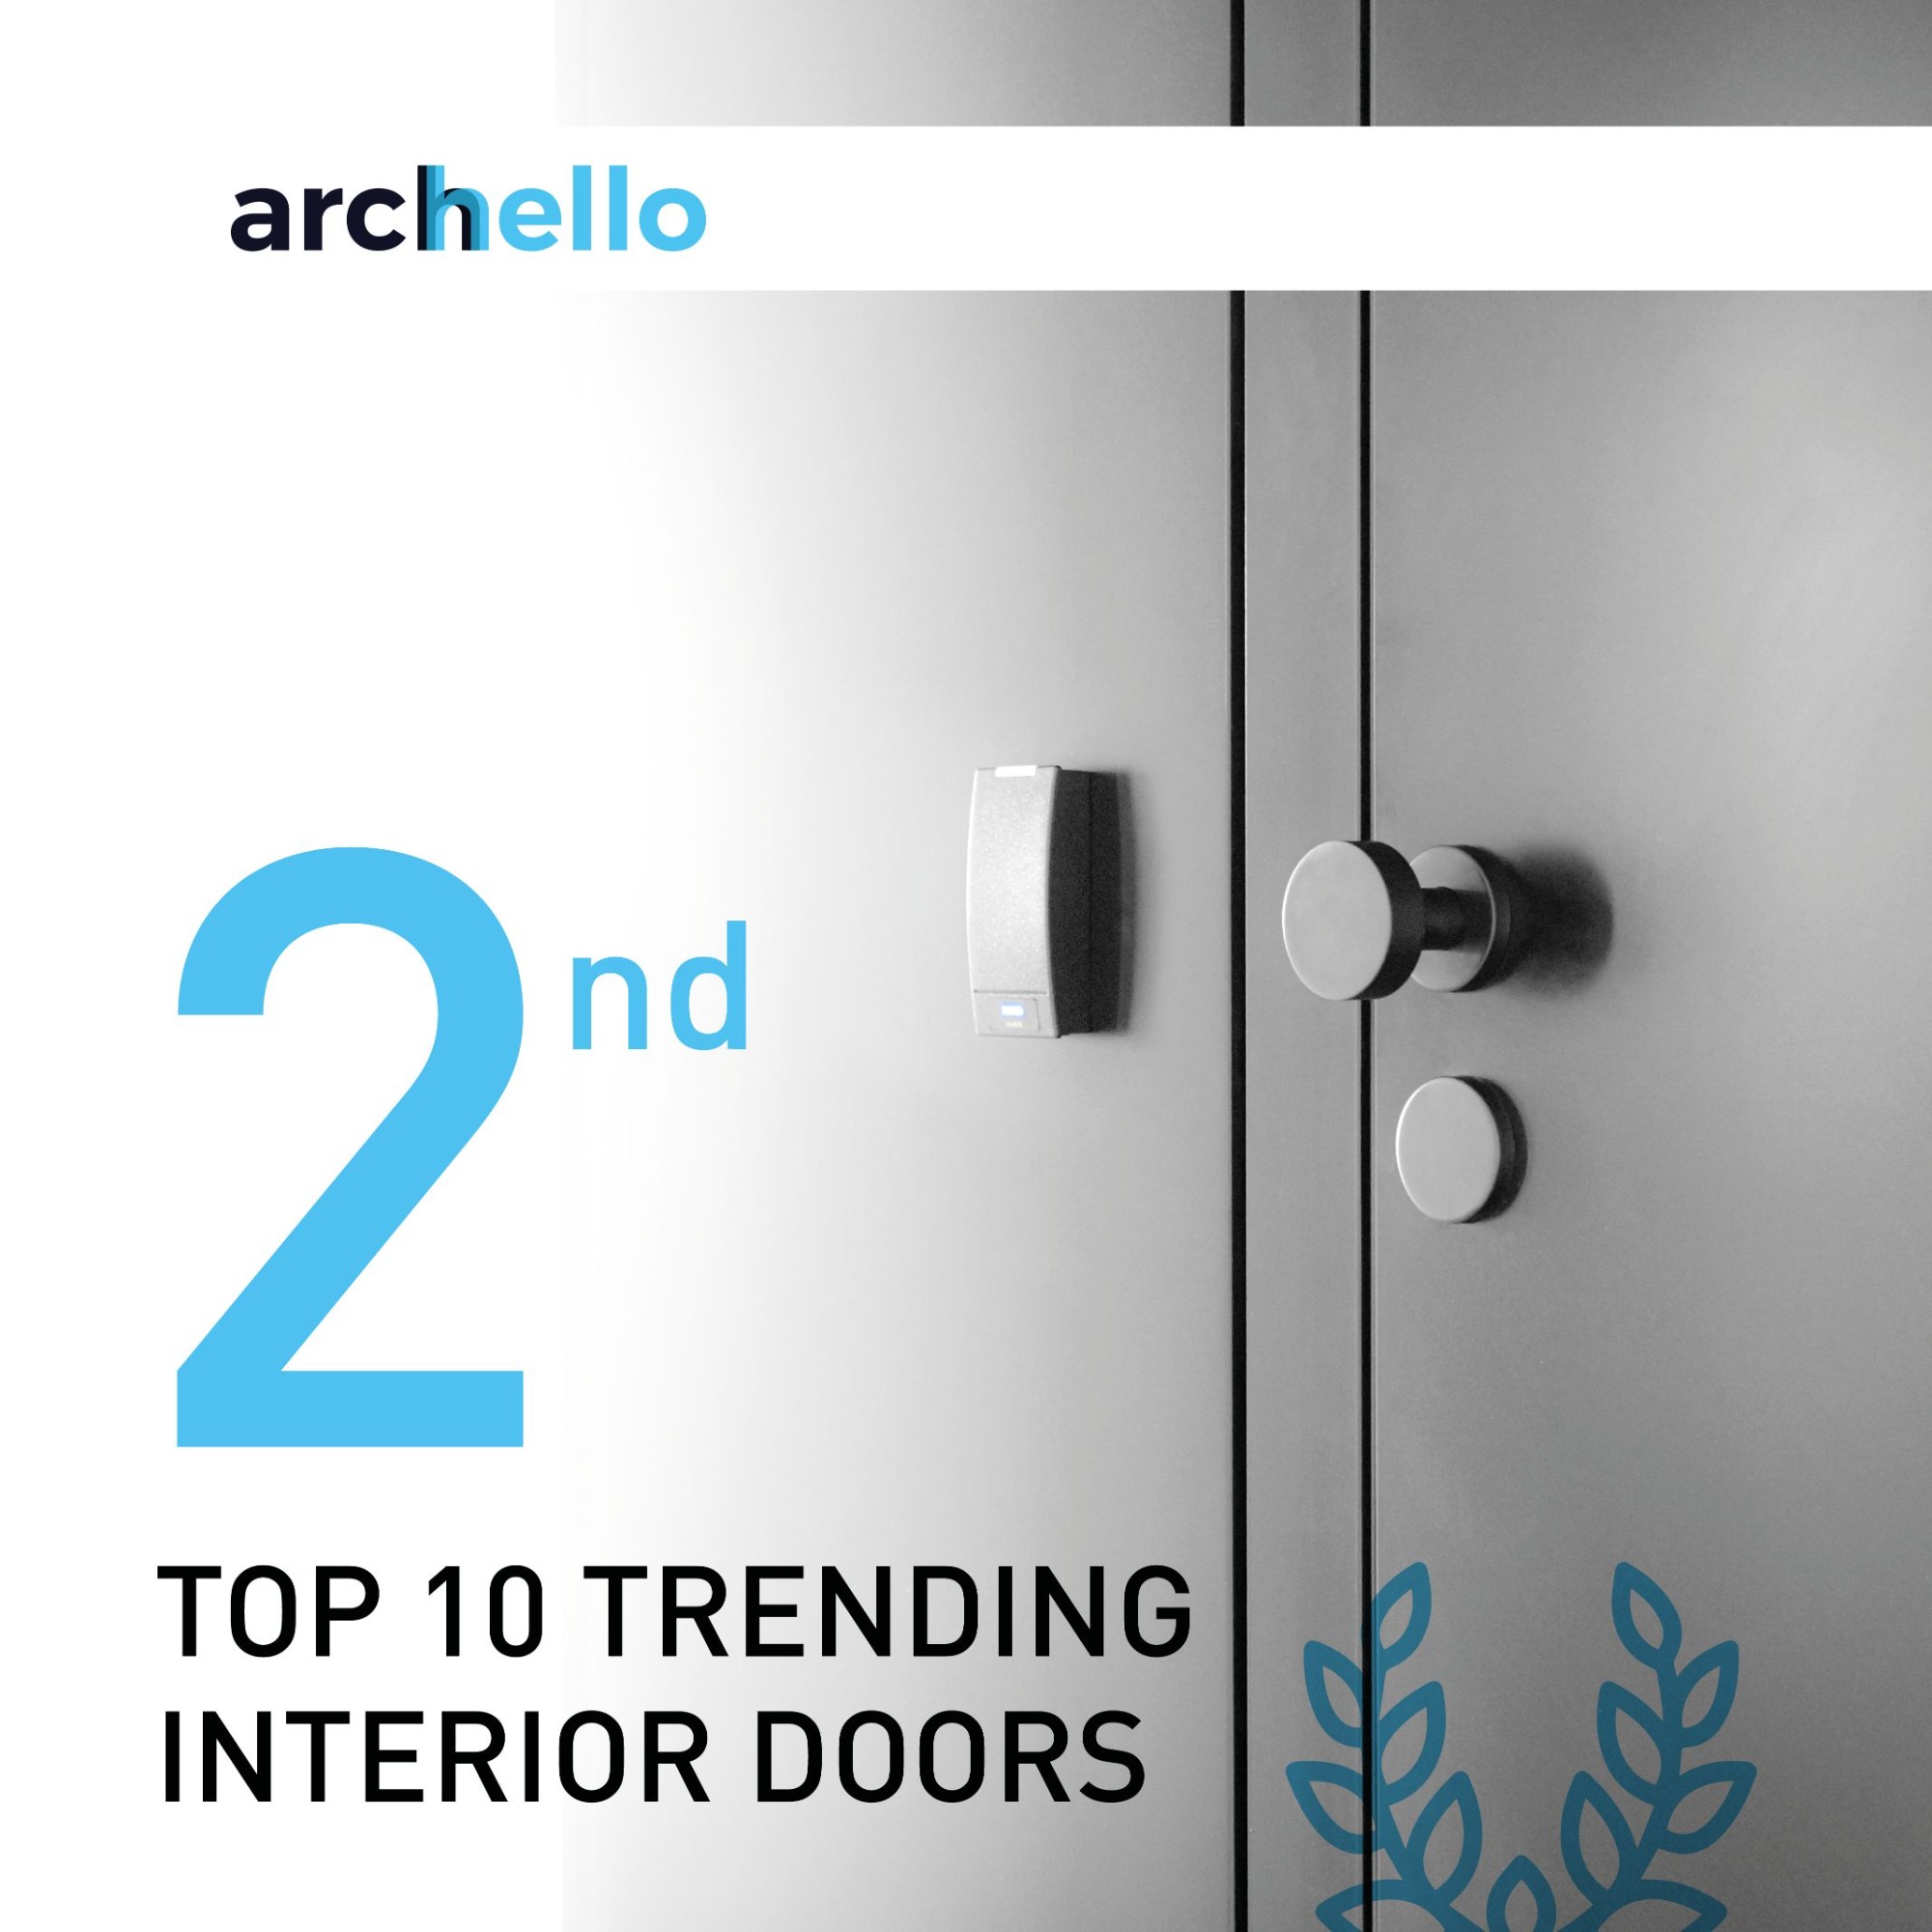 We have made it into Archello's Top 10 trending interior door manufacturers list